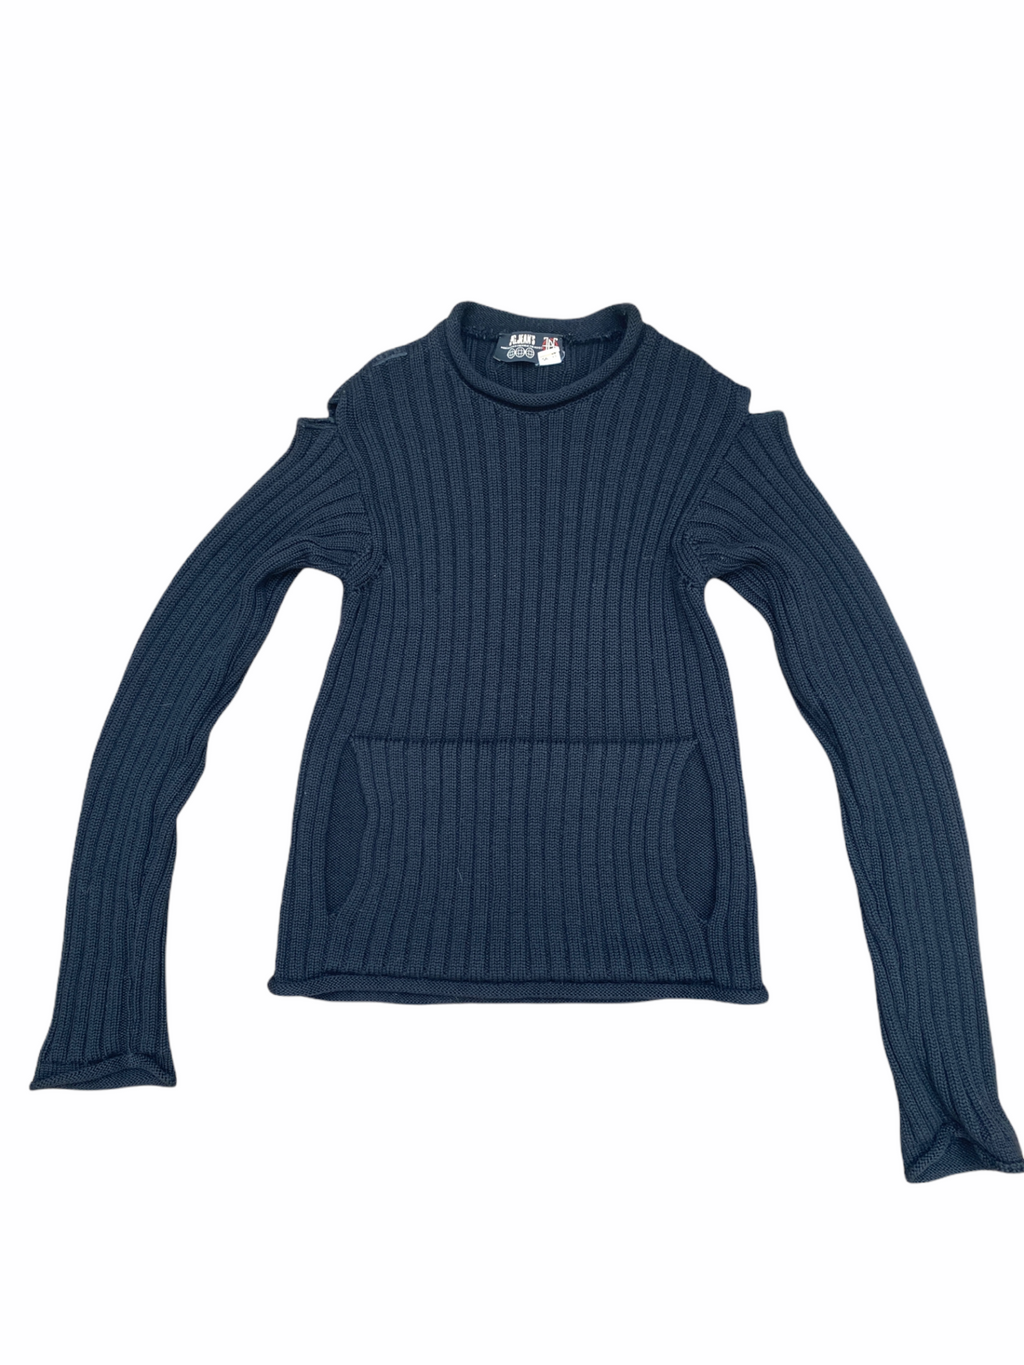 Open Shoulders Black Knit Sweater